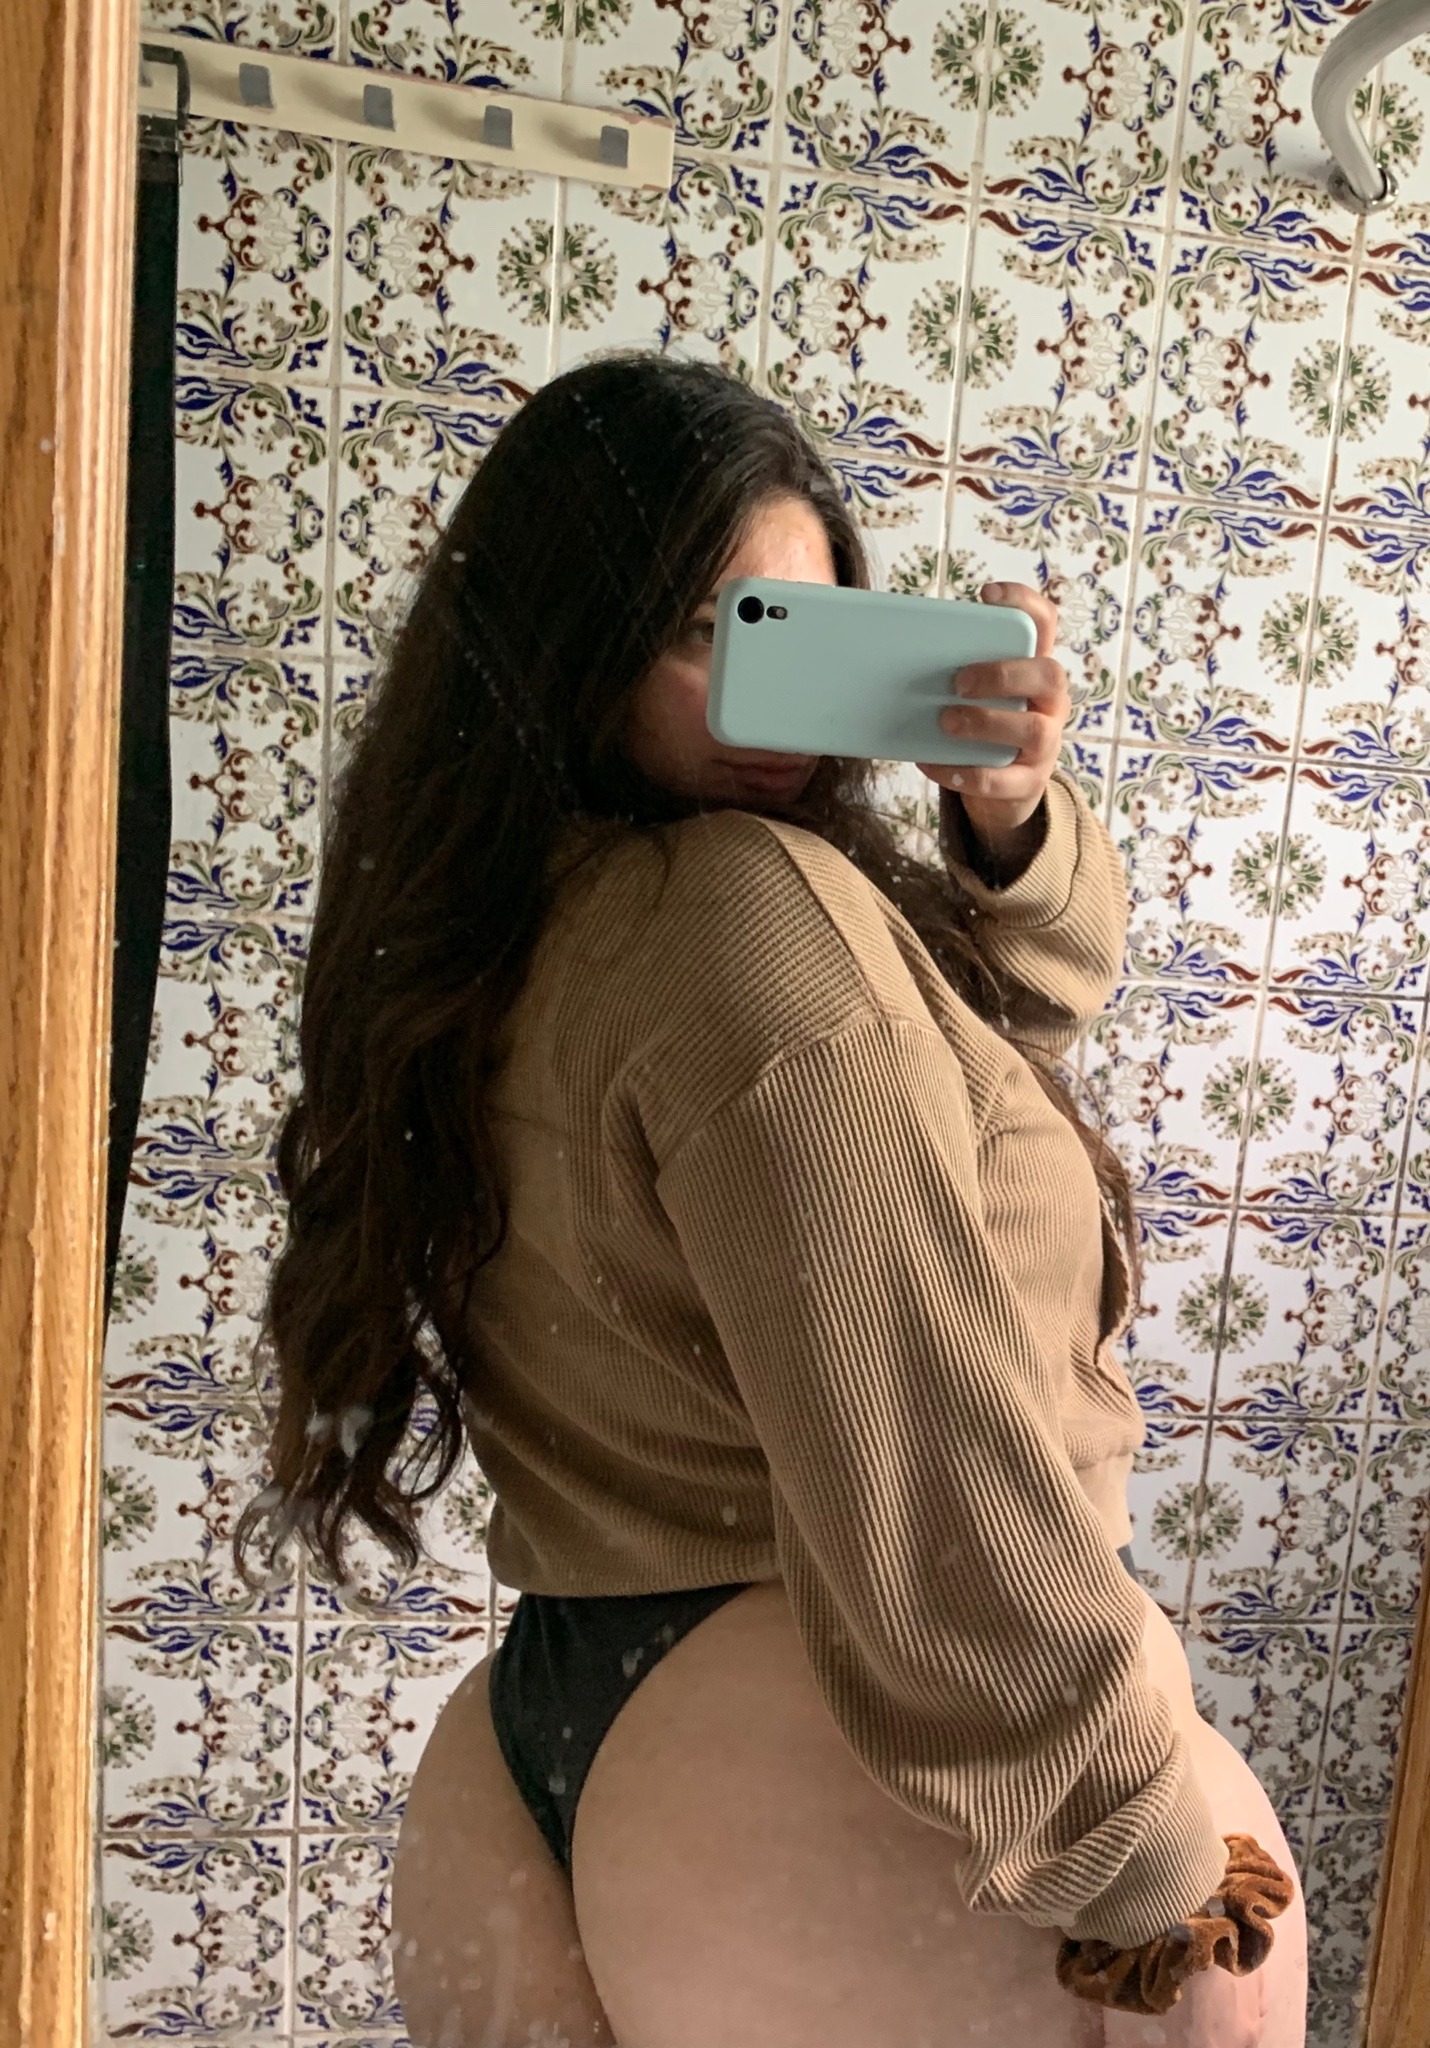 Nice ass latina